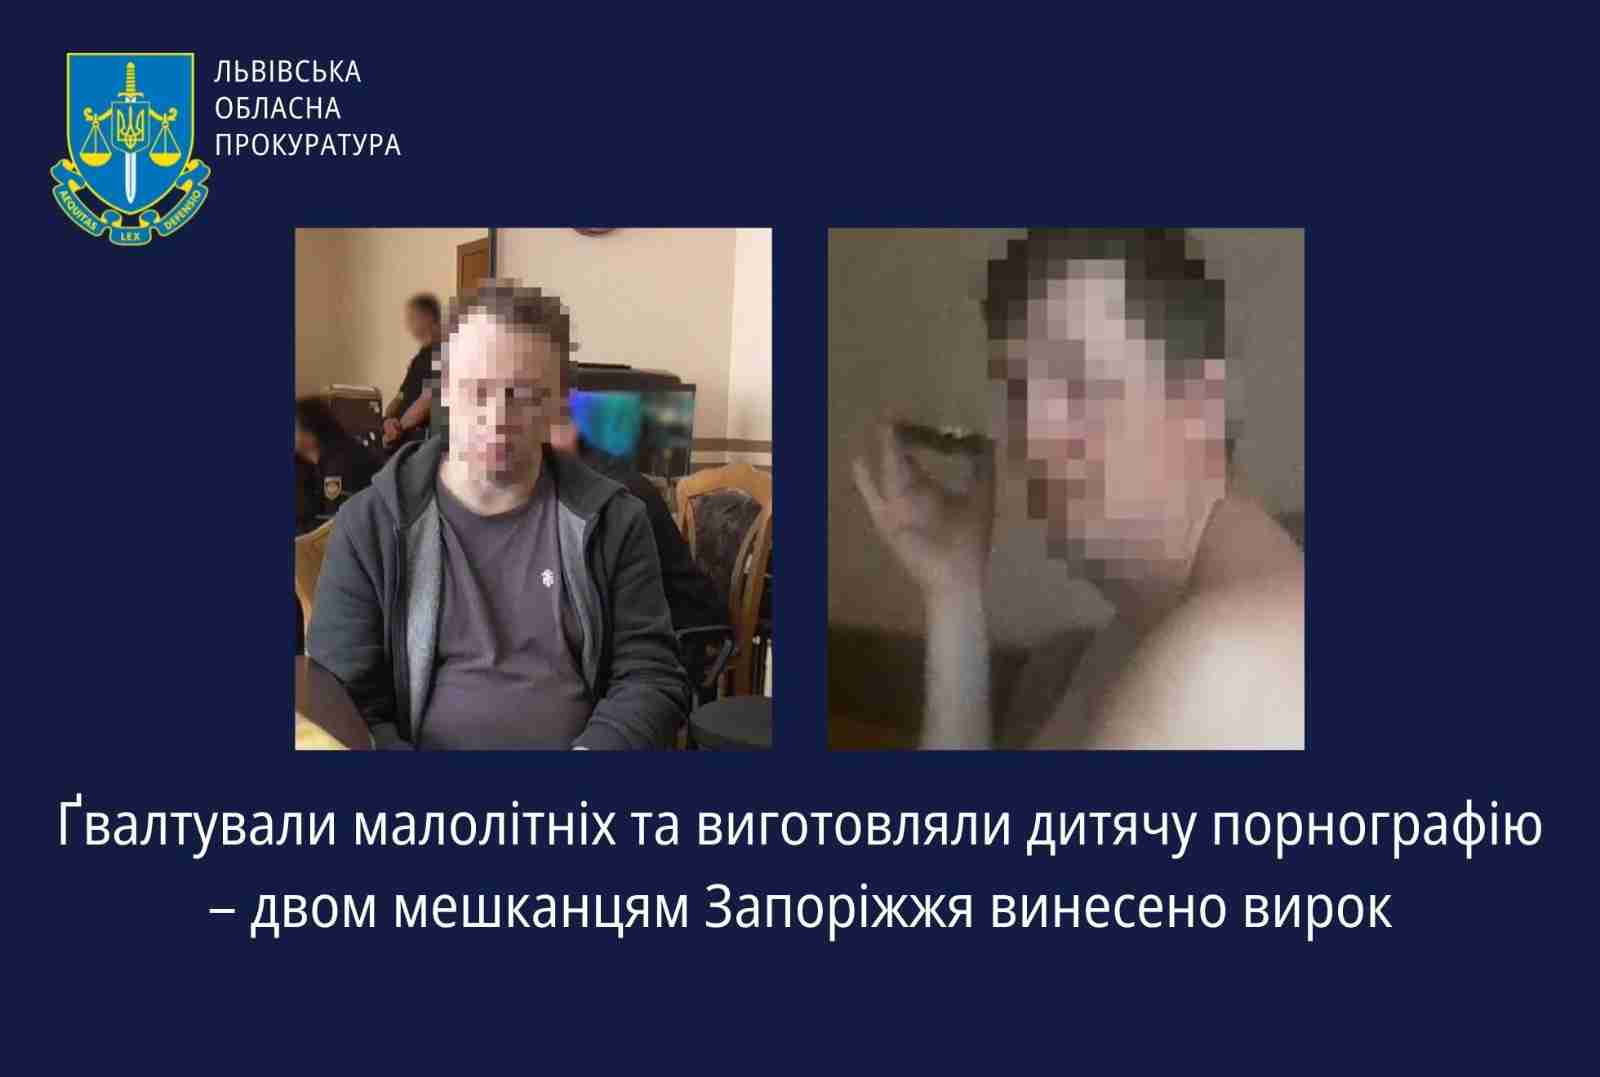 Ґвалтували малолітніх та виготовляли дитячу порнографію: у Львові судили двох чоловіків (ФОТО)